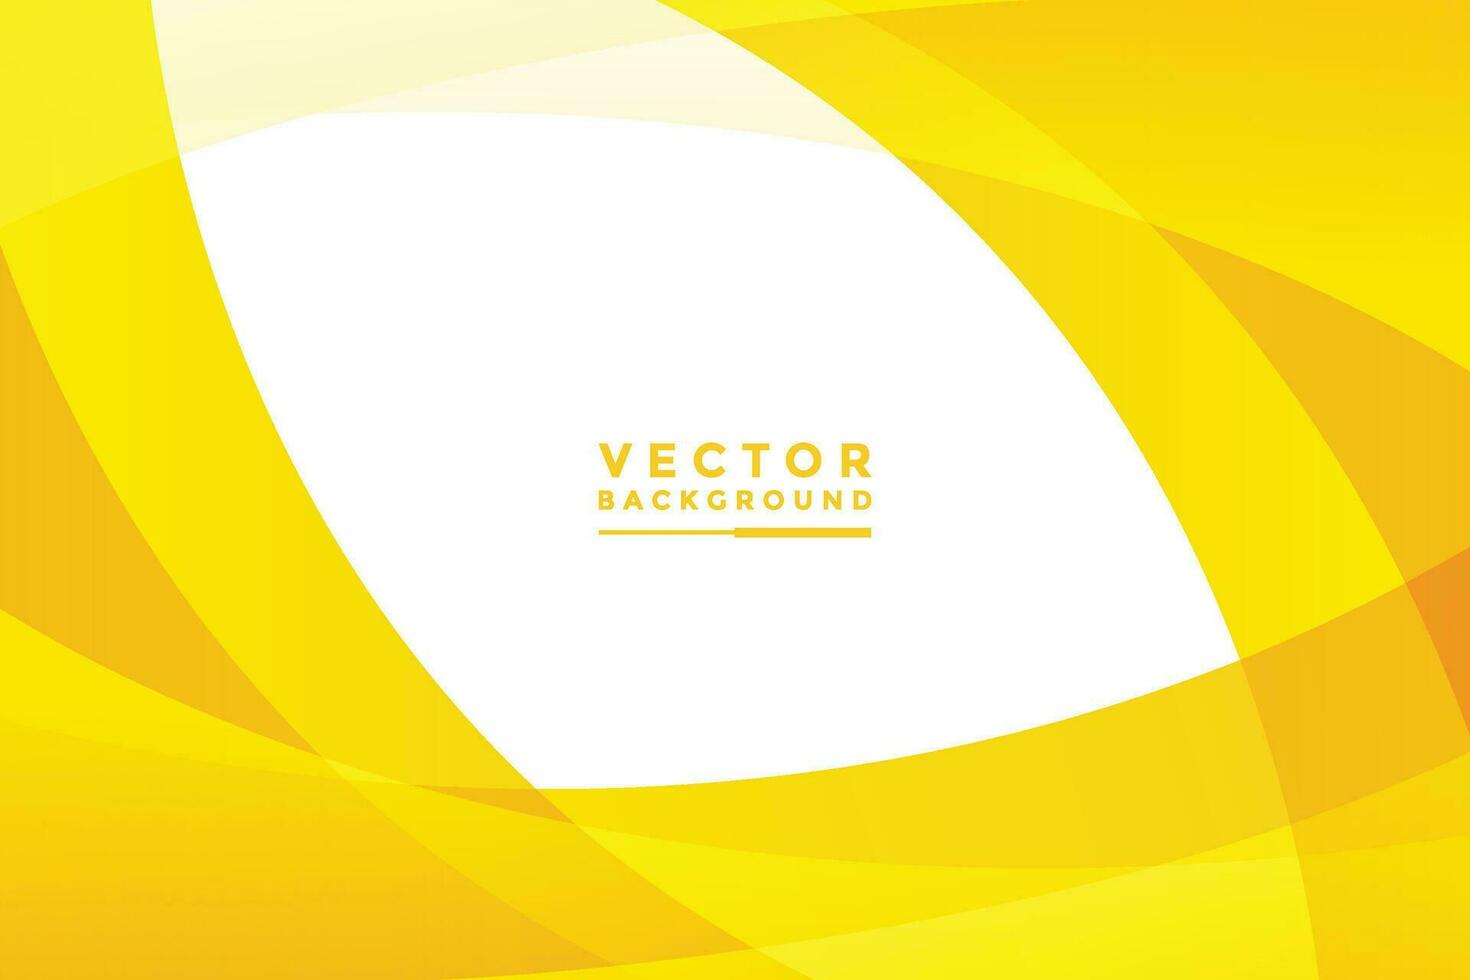 gráfico de efecto de iluminación de ilustración de vector de fondo amarillo para infografía de diseño de tablero de mensajes y texto.